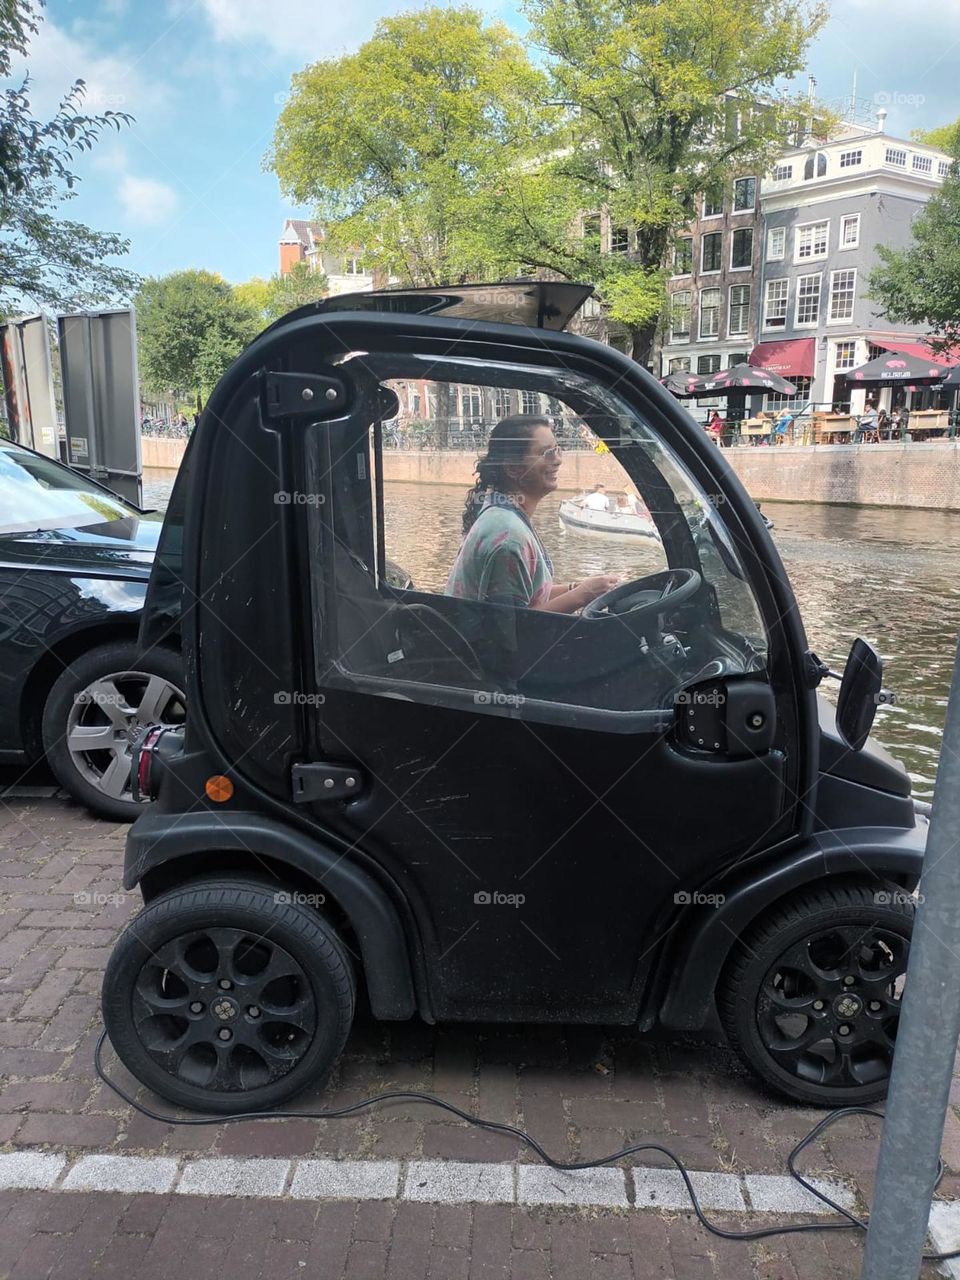 Quando não se tem o carro, imagine … Amsterdā. Holanda. 🇳🇱